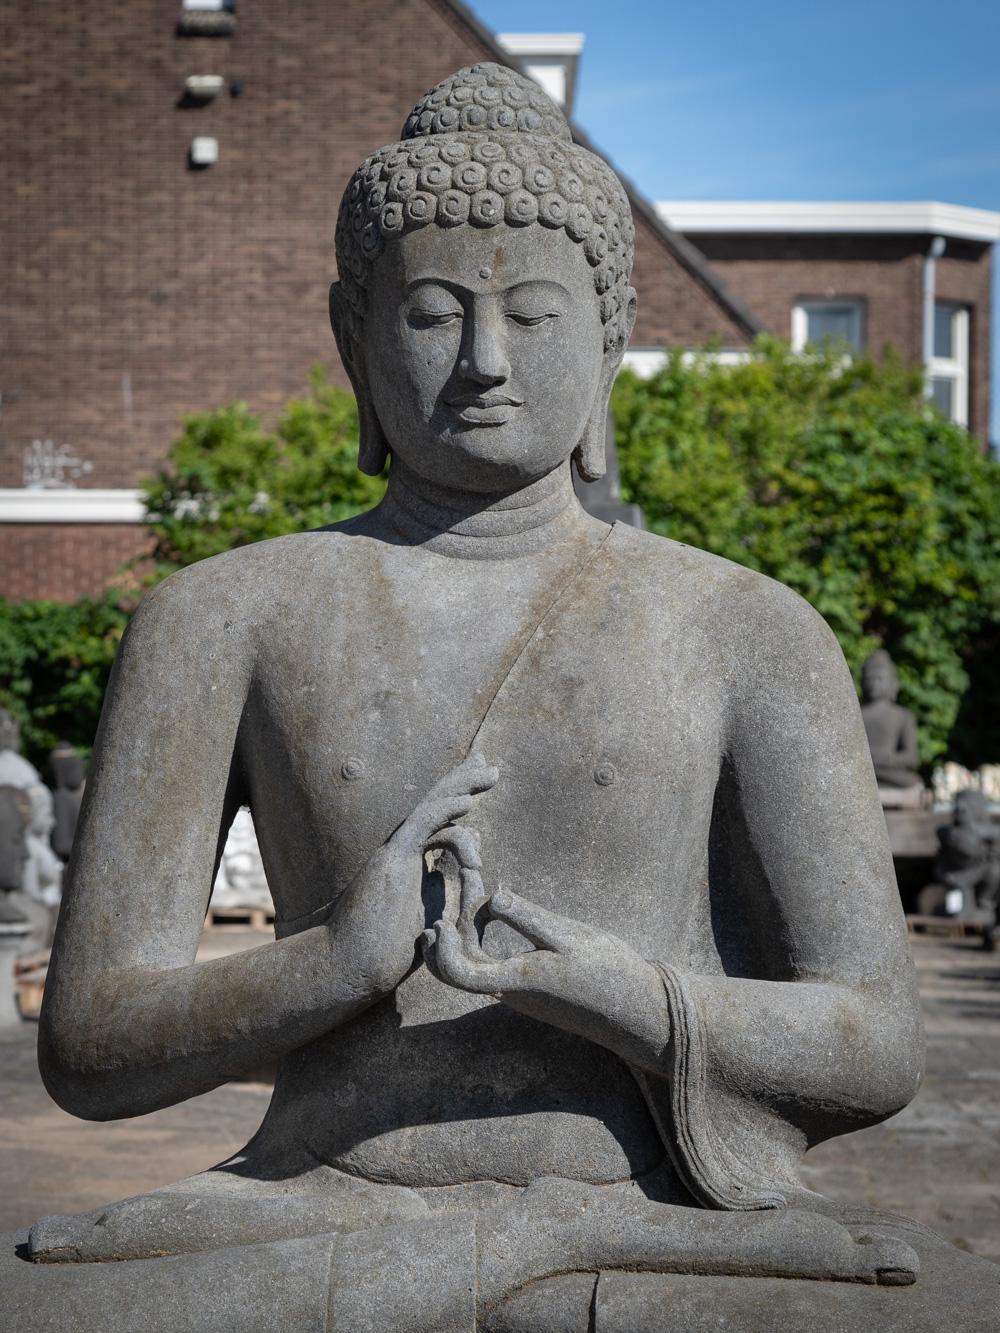 Die Lavastein-Buddha-Statue aus Indonesien ist ein außergewöhnliches Kunstwerk, das die einzigartige Schönheit des Lavastein-Kunsthandwerks unter Beweis stellt. Diese prächtige Statue aus Lavastein hat eine beeindruckende Höhe von 161 cm und misst